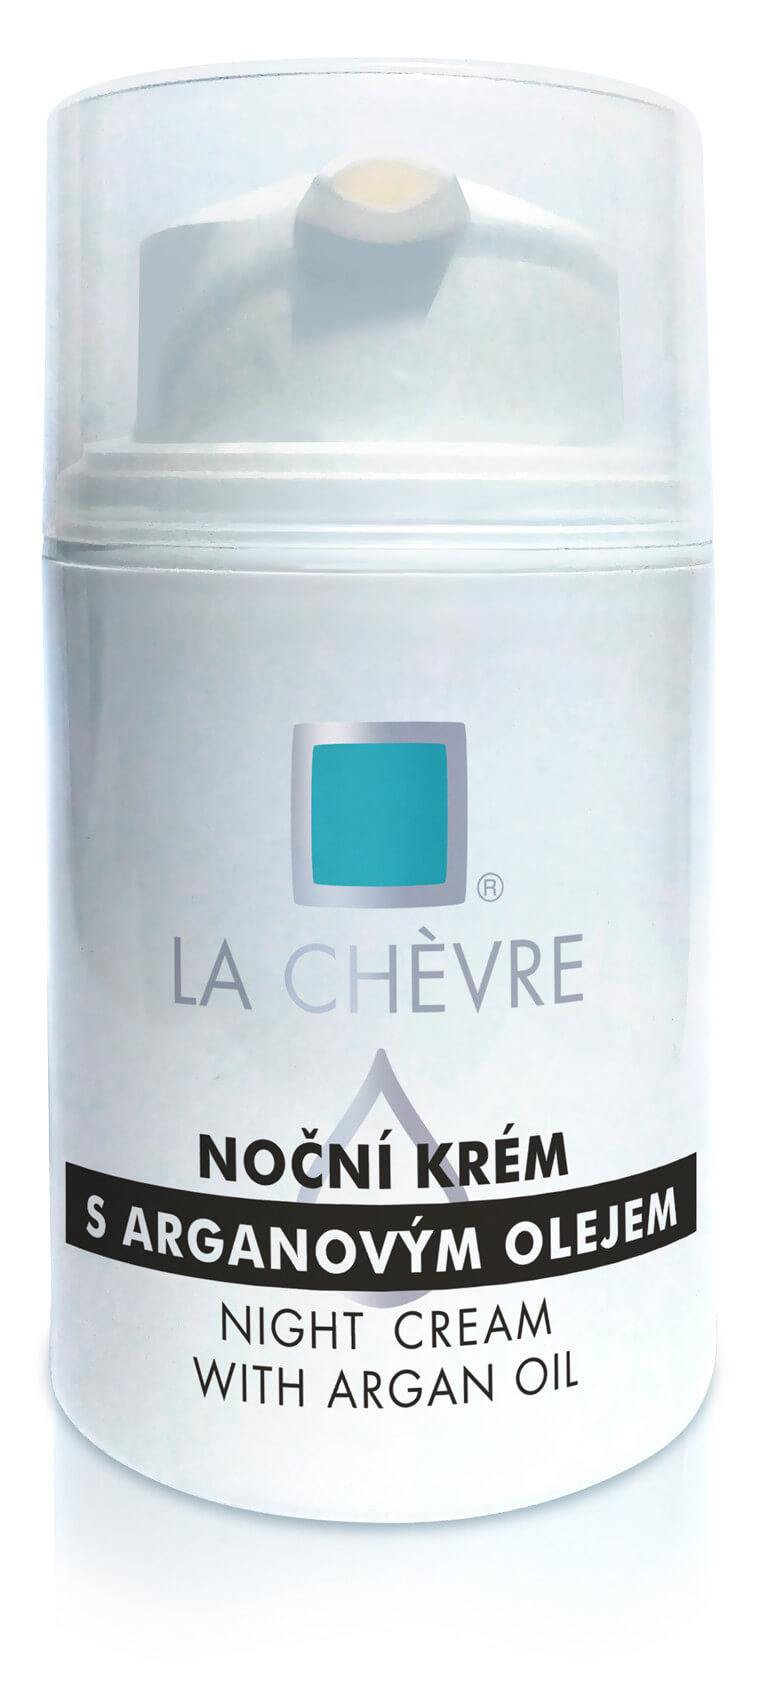 La Chévre Noční krém s arganovým olejem (Night Cream With Argan Oil) 50 g